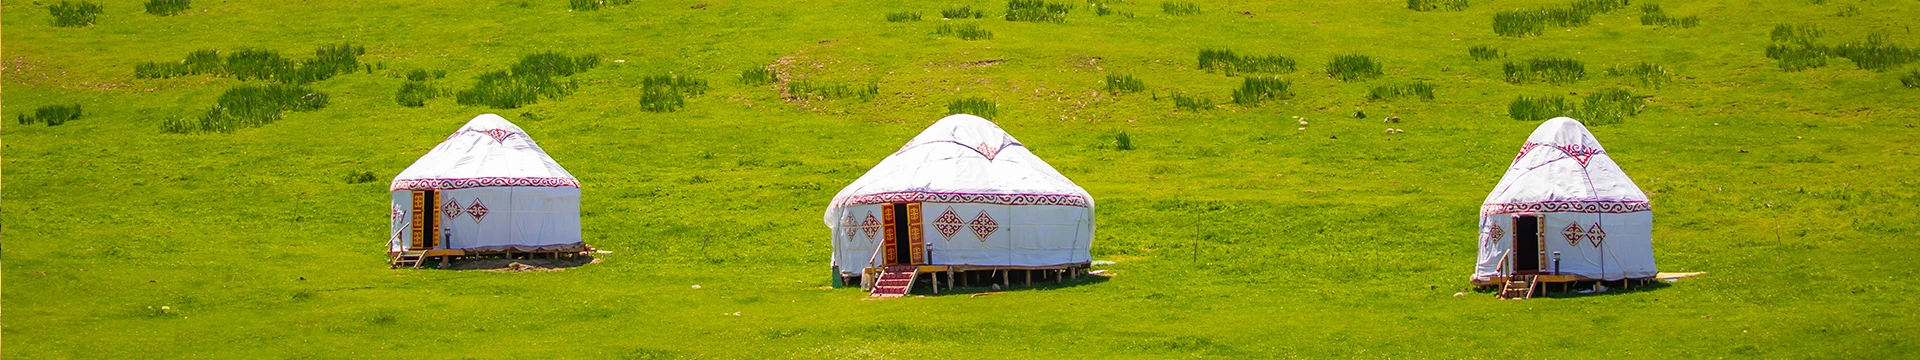 Hotels in Kyrgyzstan